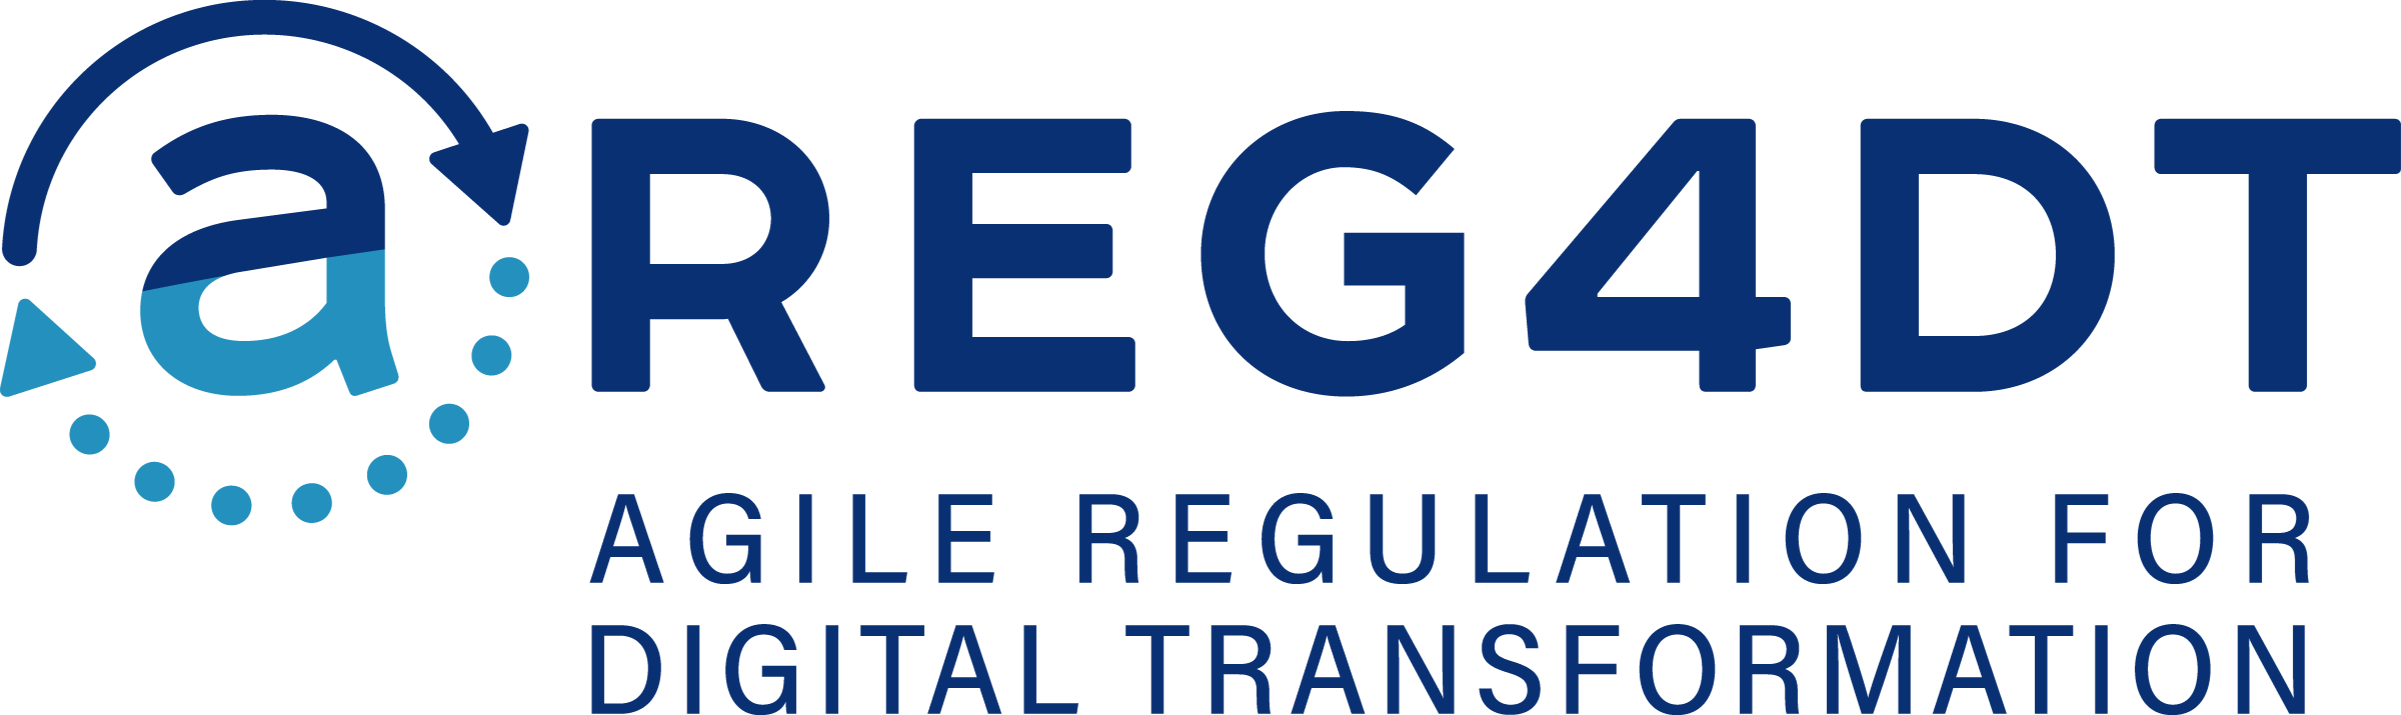 AREG4DT-logo